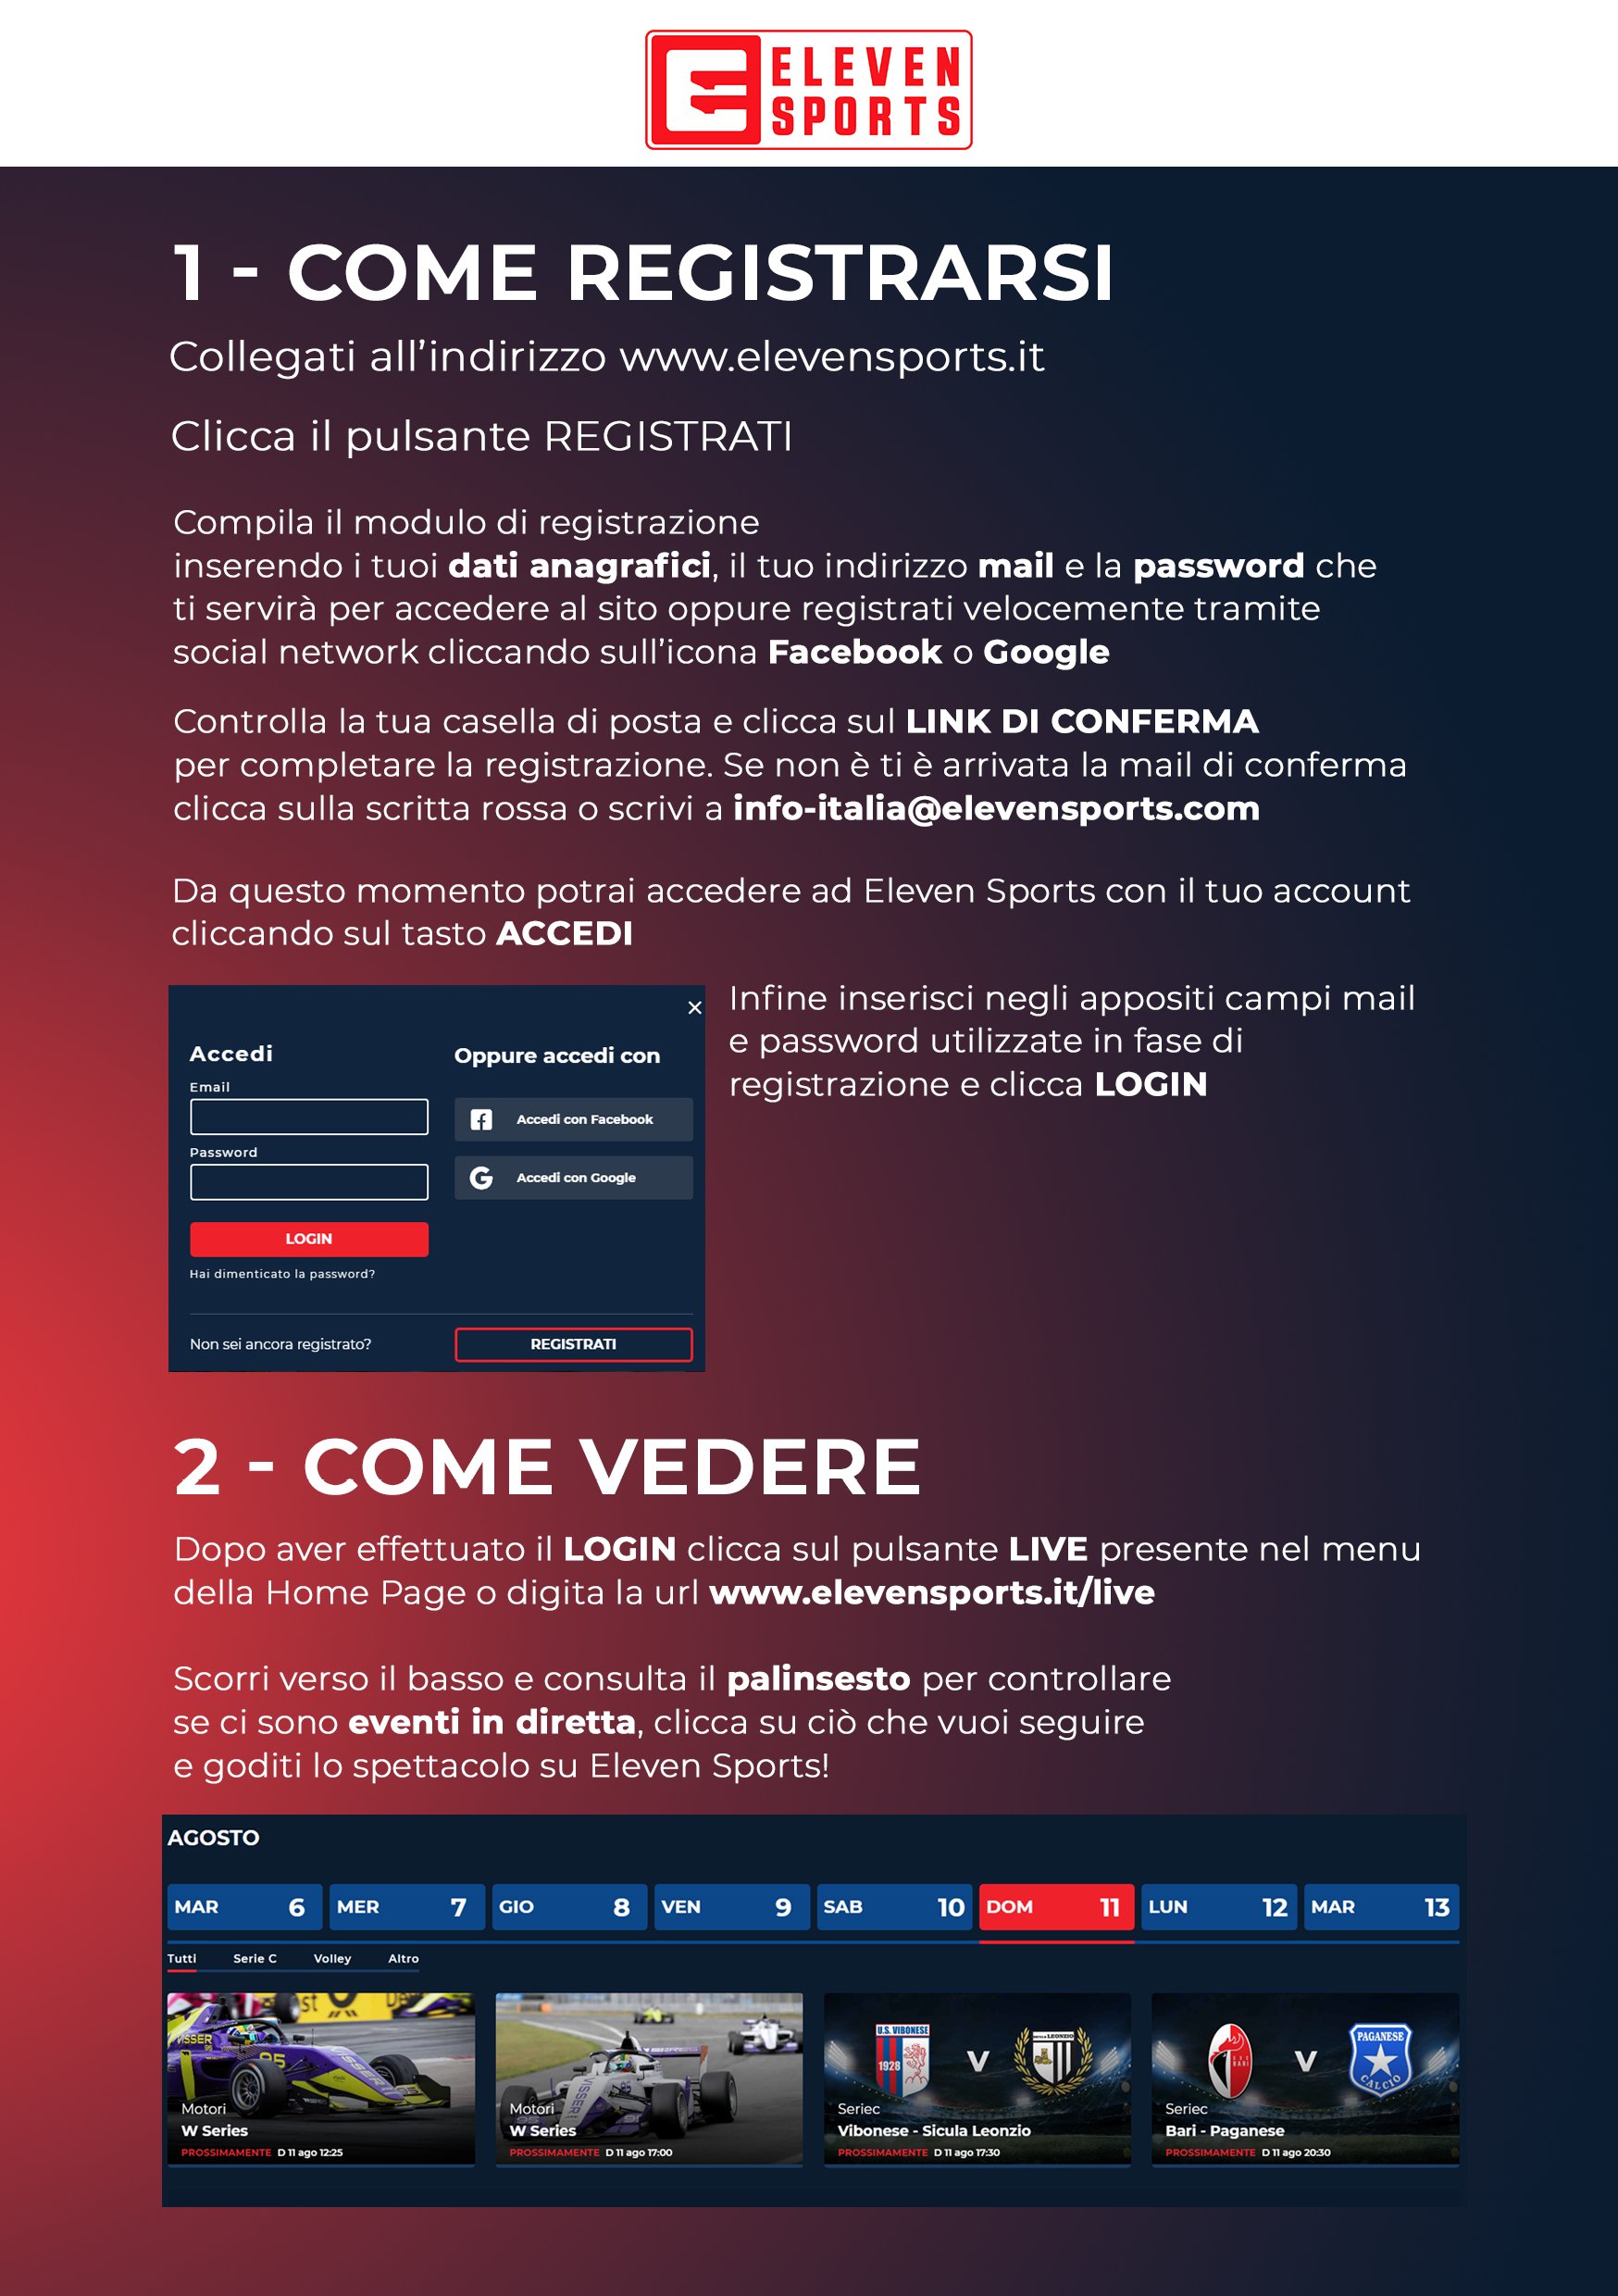 Serie C TV, Playout Andata e Coppa Italia  - Programma e Telecronisti Eleven Sports